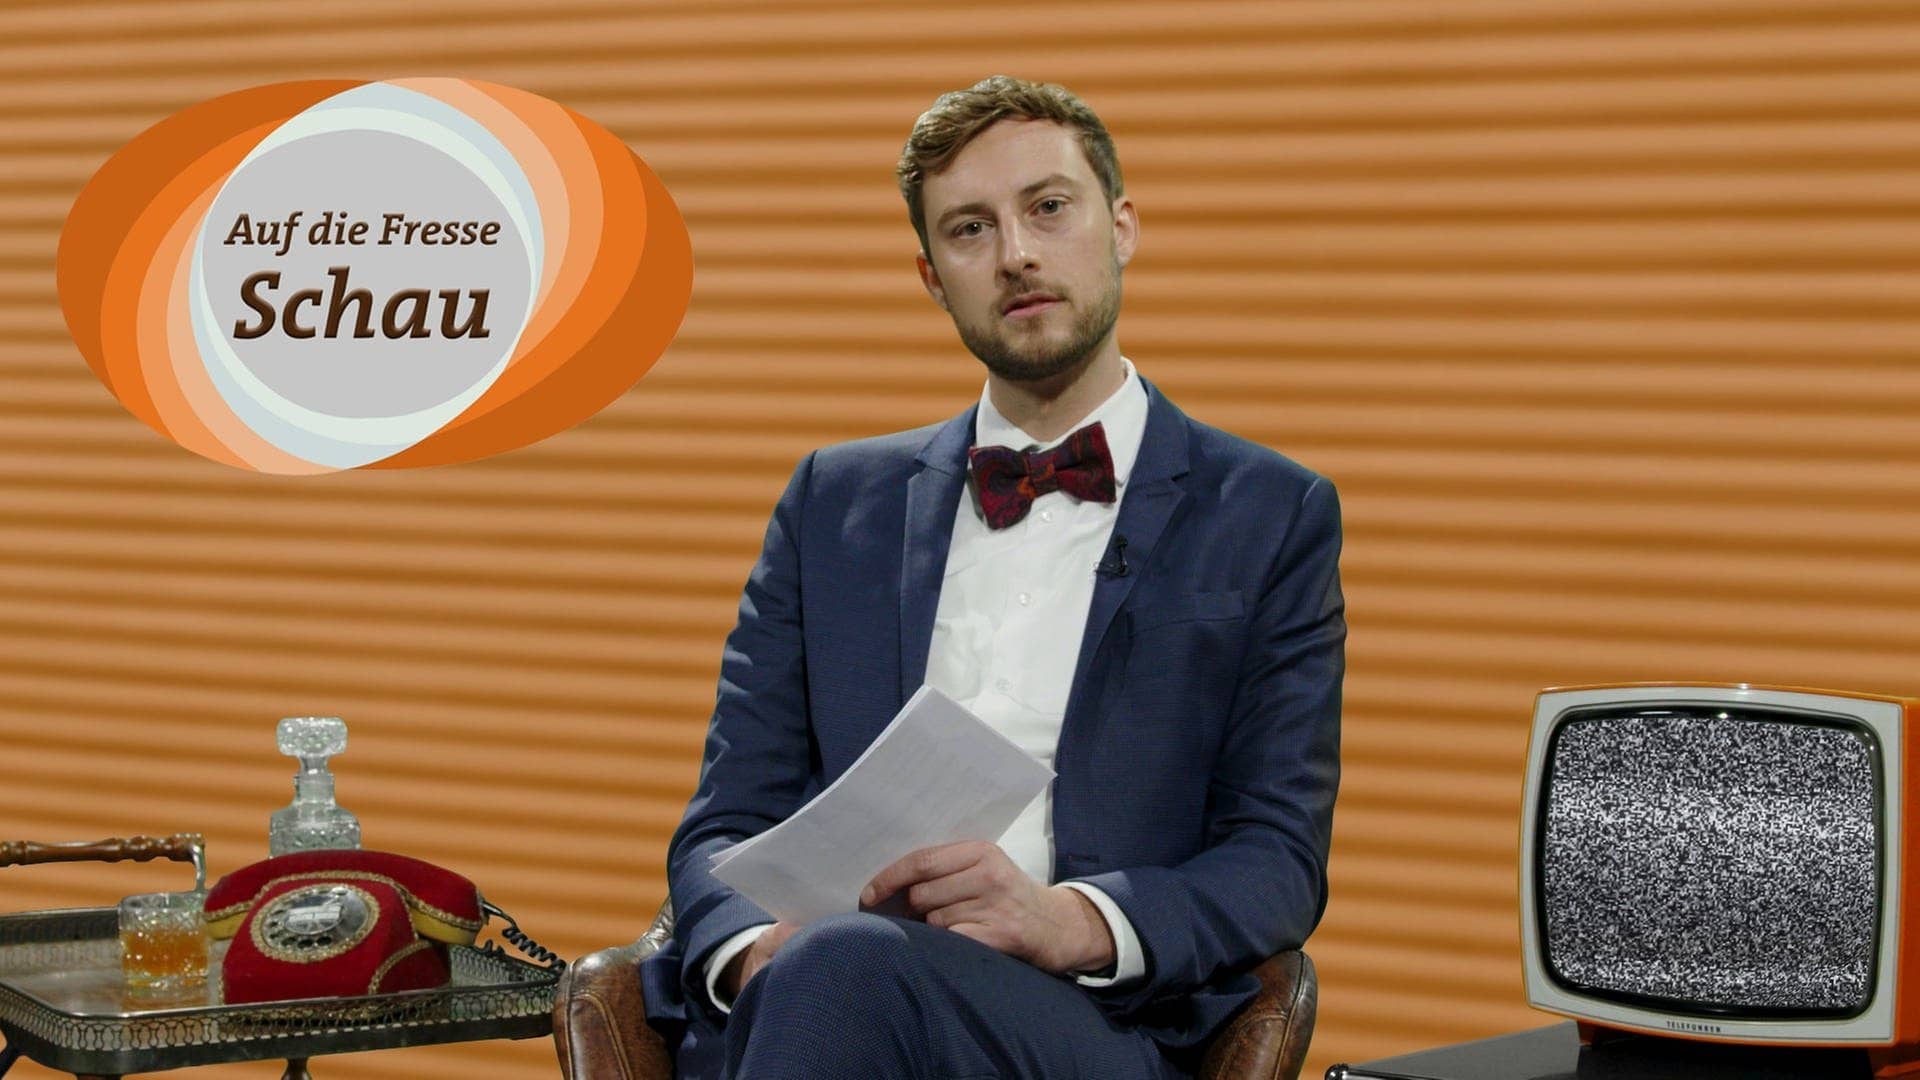 SWR3-Moderator Constantin Zöller sitzt mit Jackett in einem Fernsehstudio. Er liest Hasskommentare, das Logo der Sendung ist eingeblendet mit der Aufschrift „Auf-die-Fresse“-Schau. (Foto: SWR3)